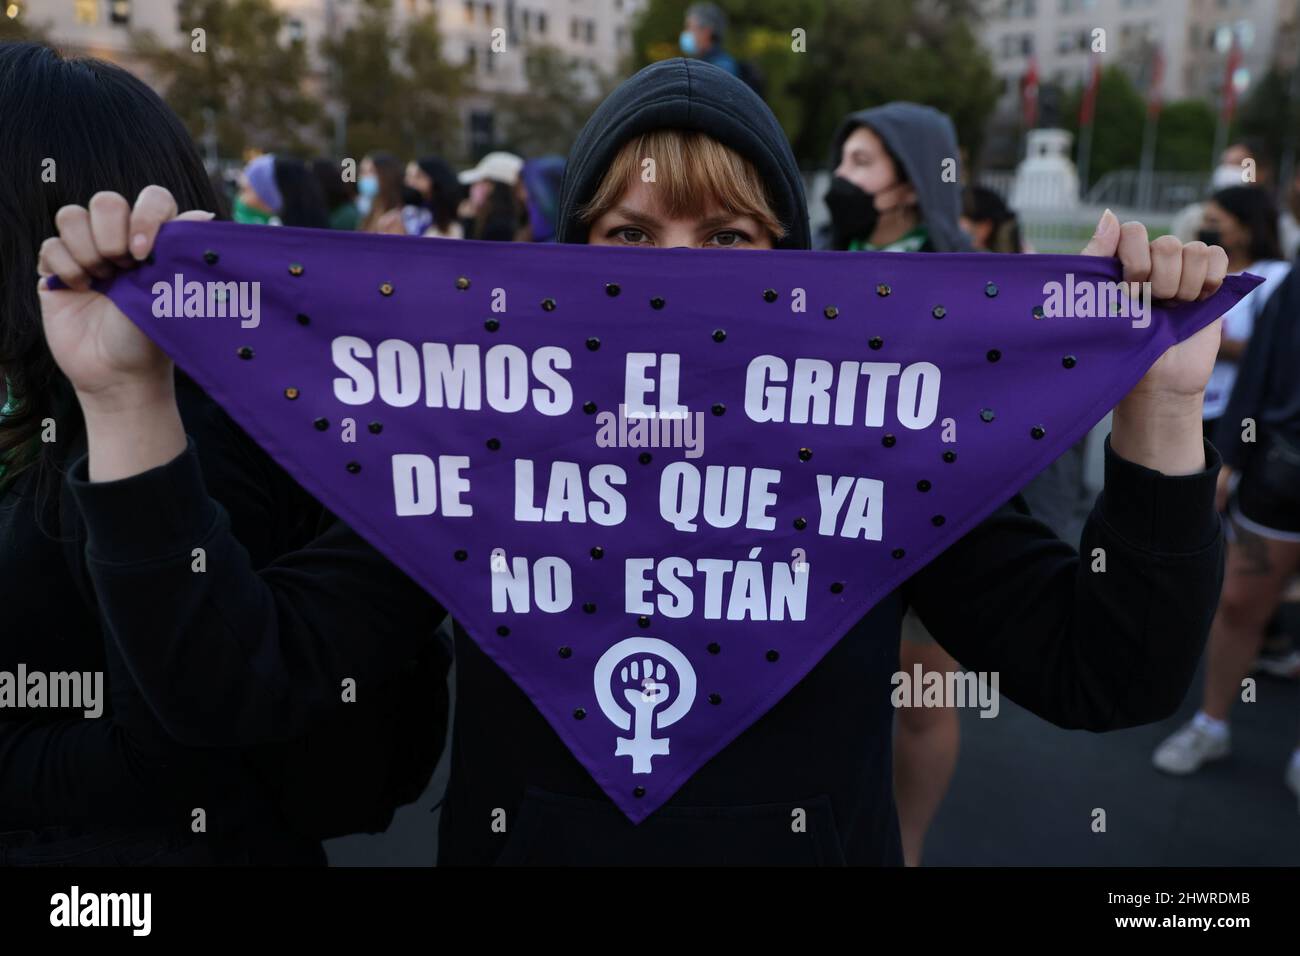 Una activista sostiene una señal que dice 'Somos el grito de aquellos que  ya no están' después de interpretar el himno feminista chileno de protesta  'Un violador en tu camino' (Un violador